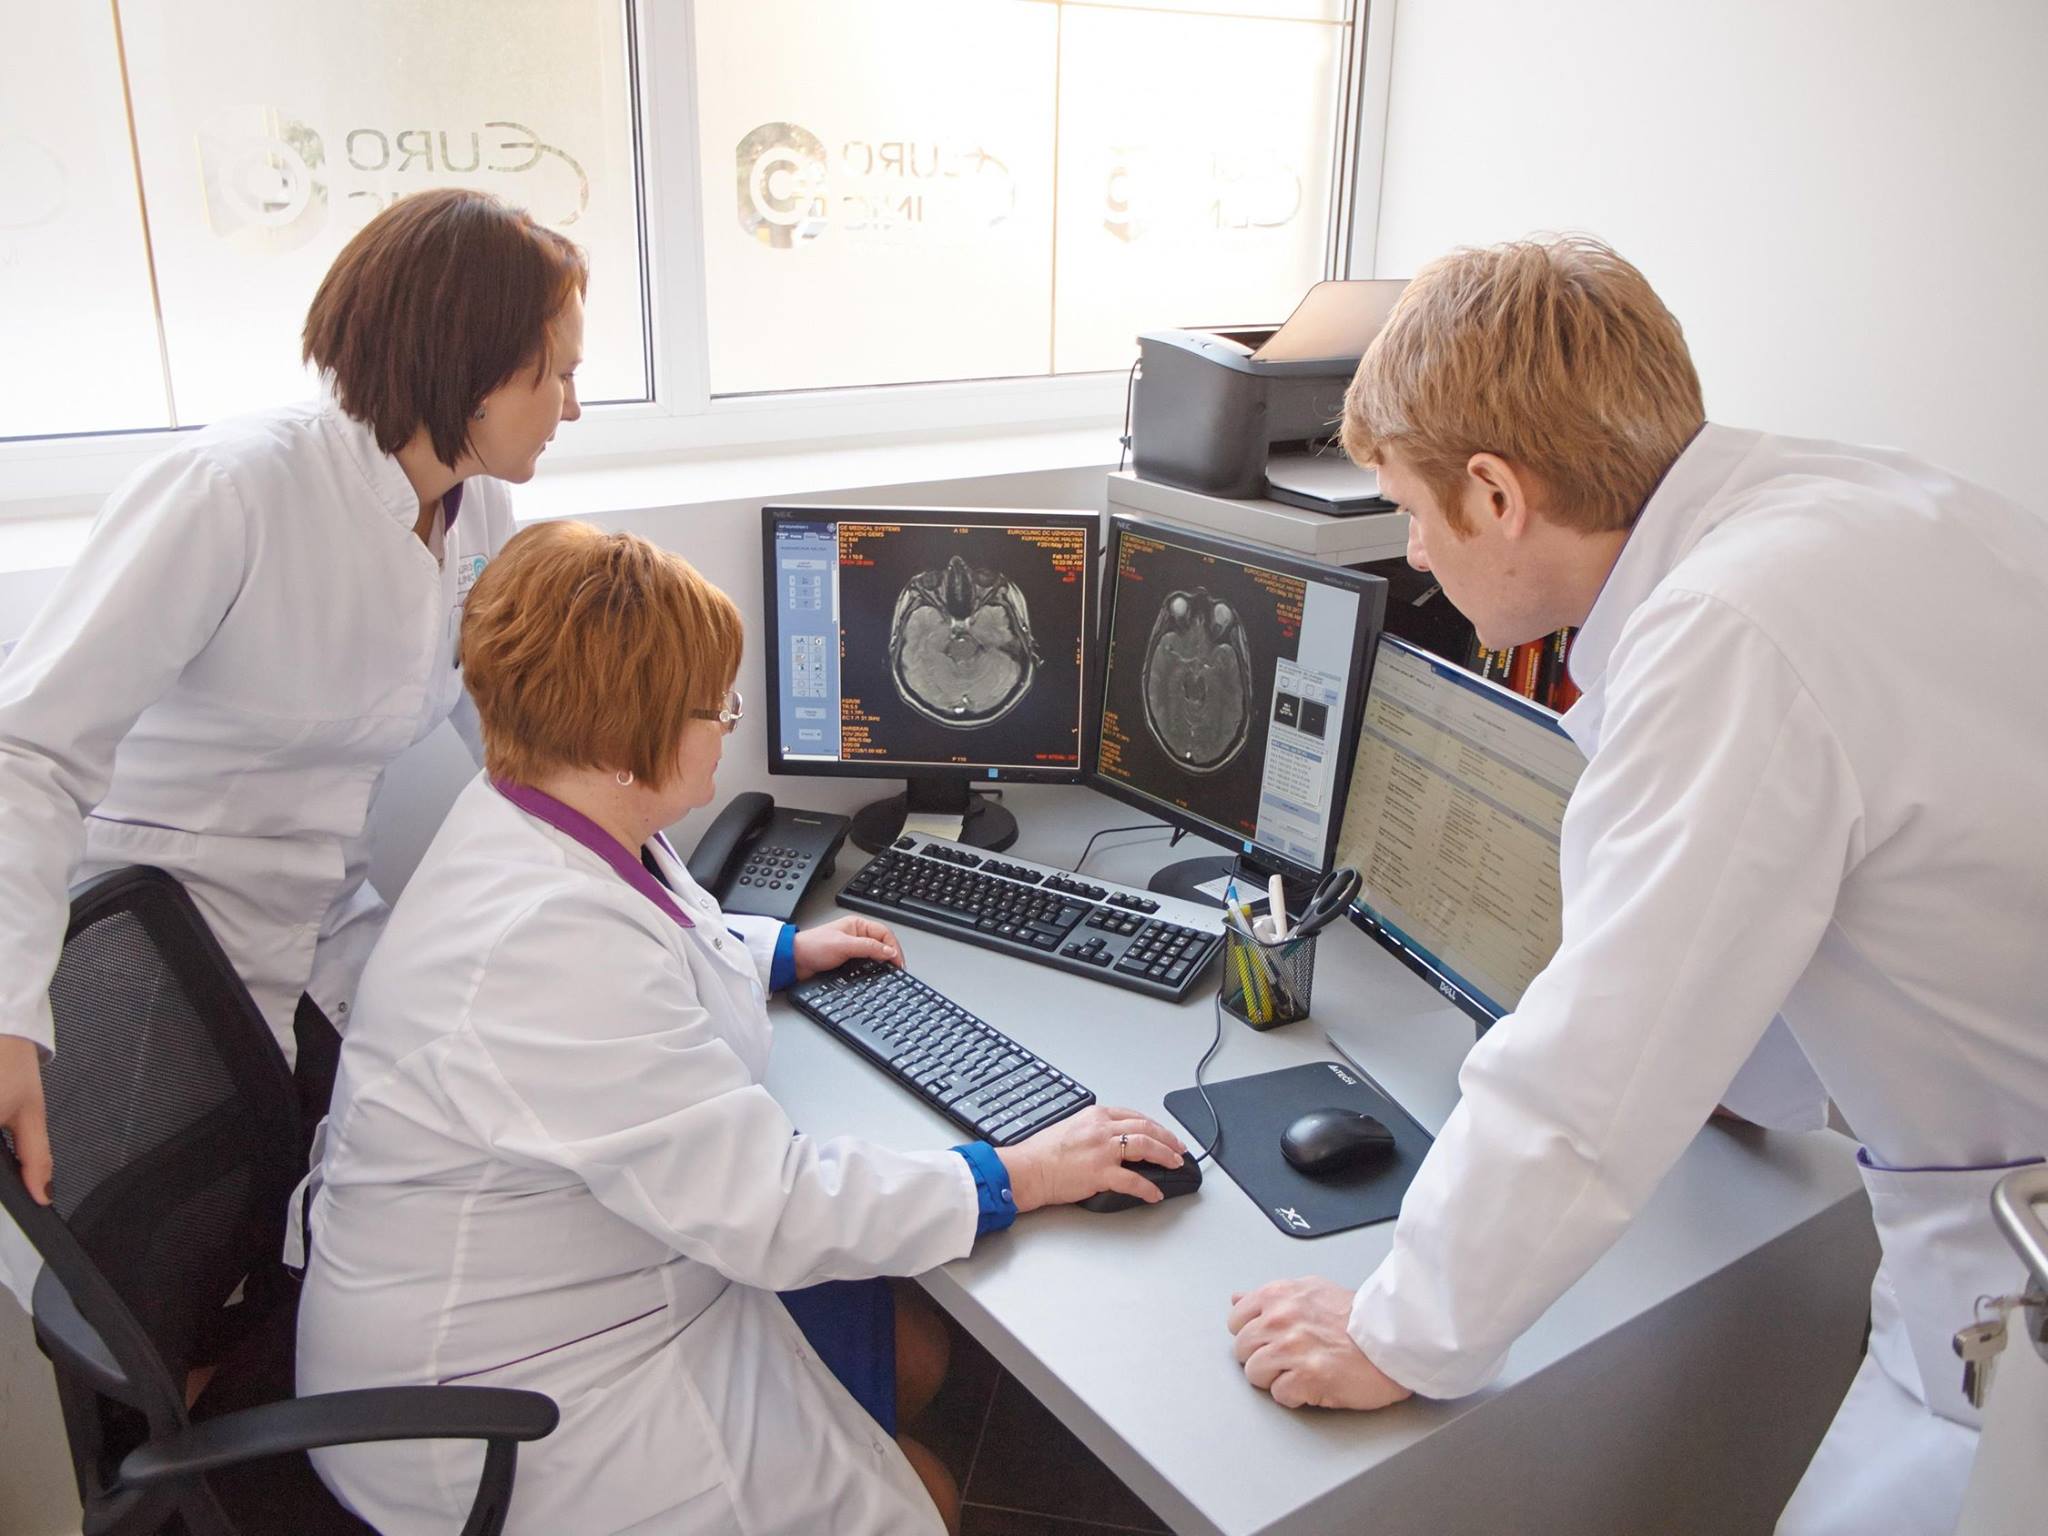 Закарпатський діагностичний центр "Євроклінік" розповів закарпатцям про МРТ